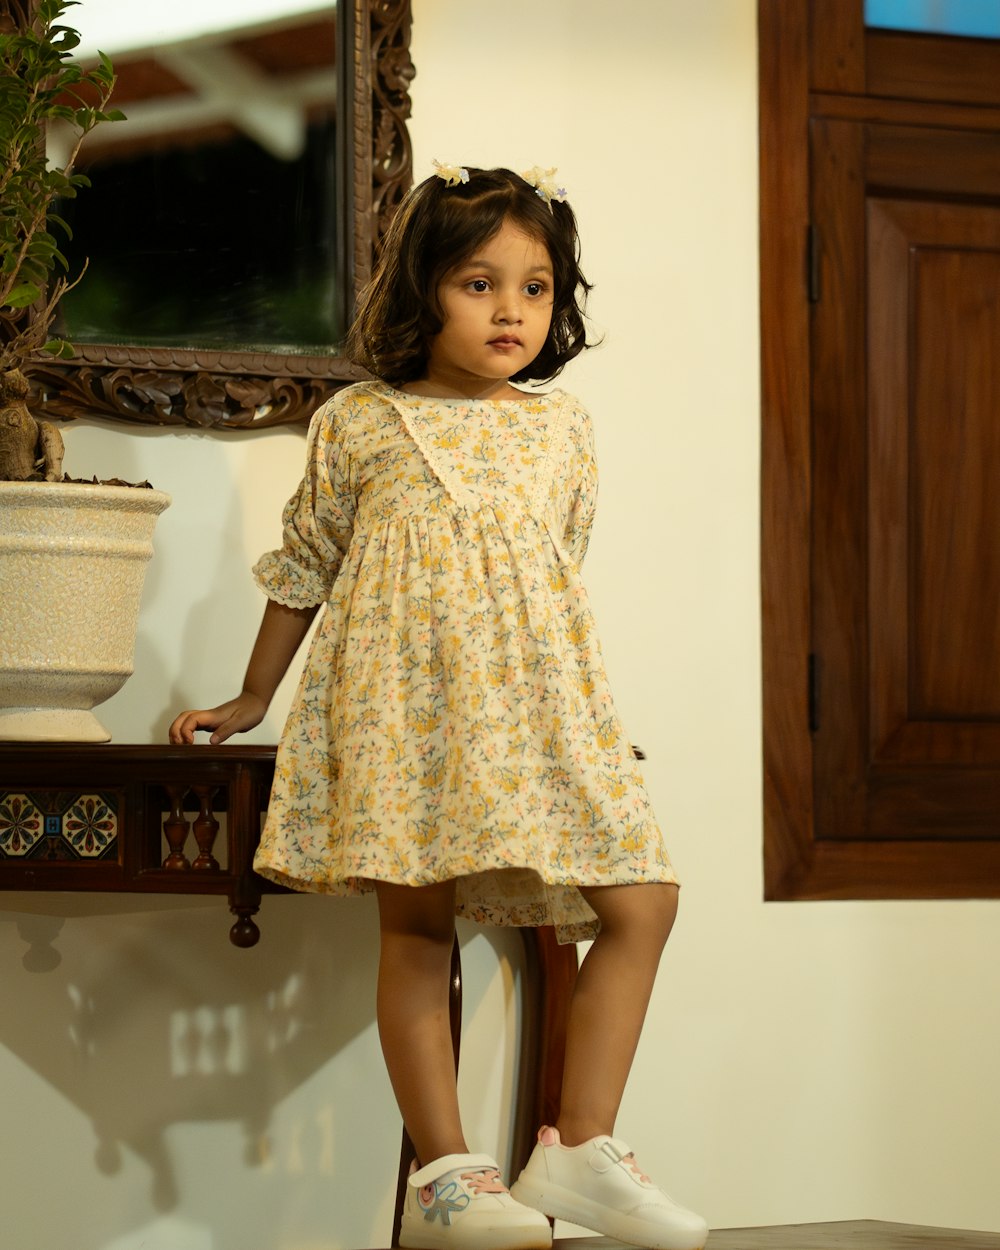 une petite fille debout sur une chaise devant un miroir